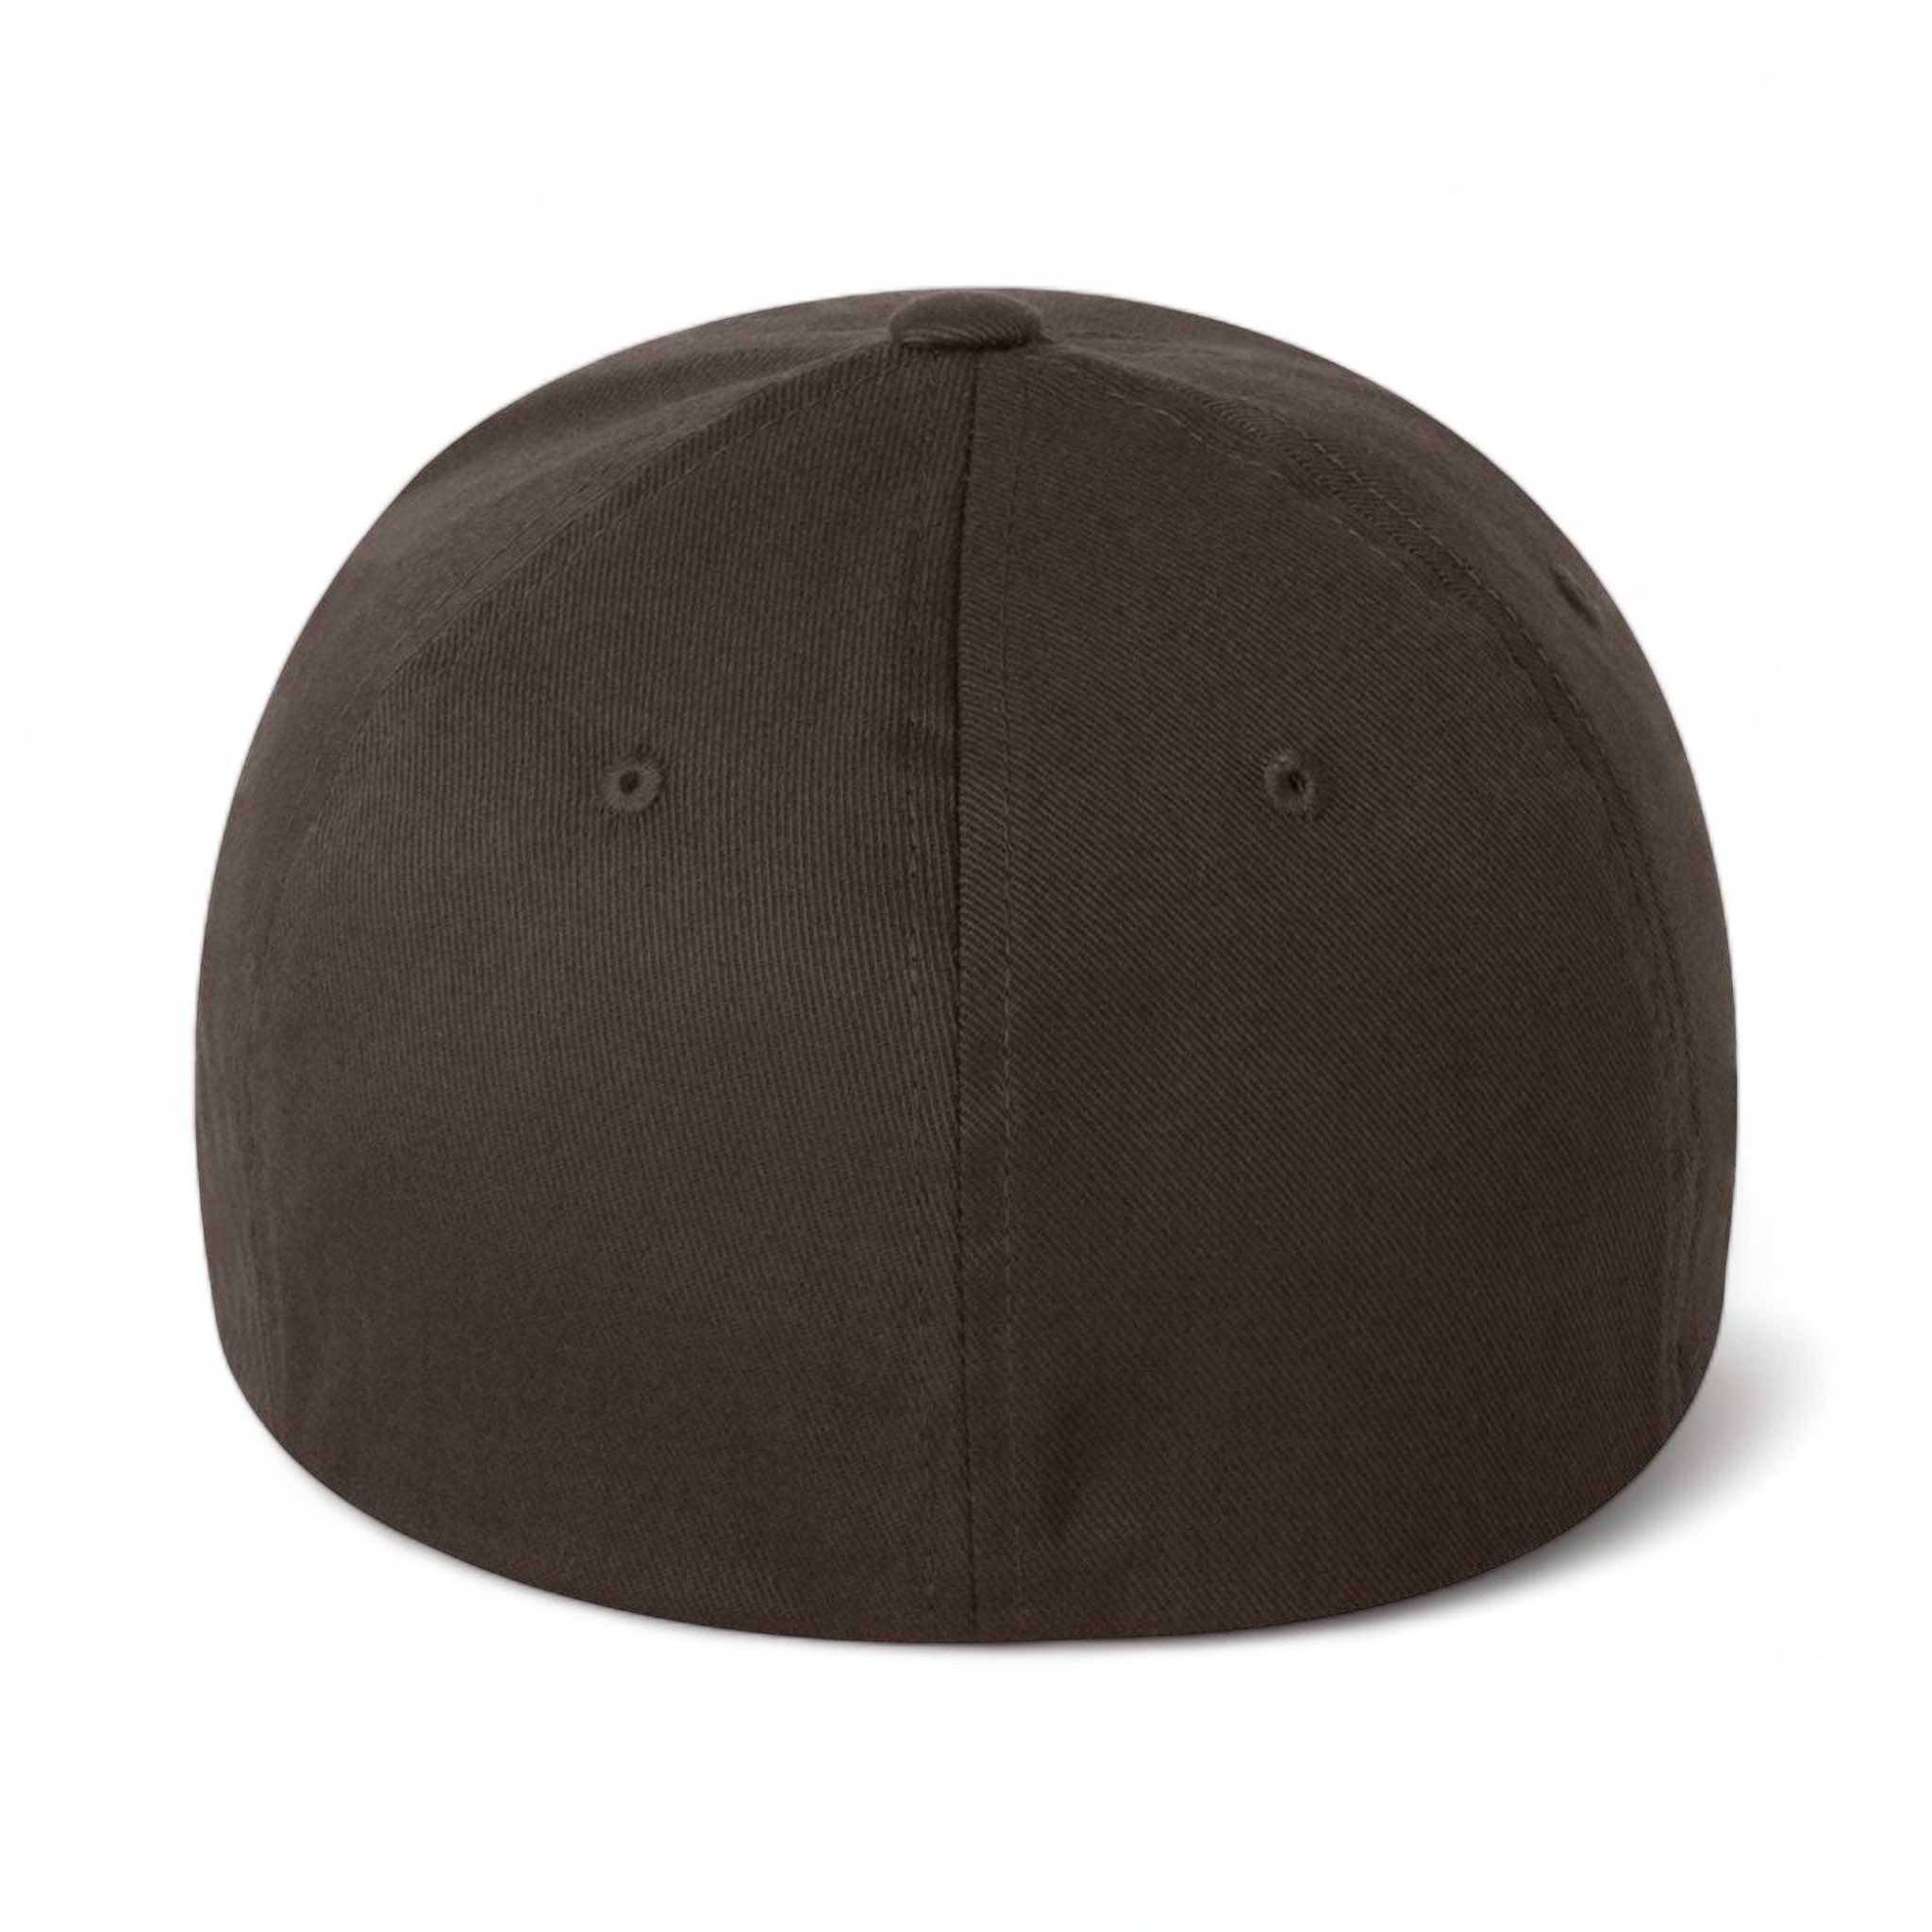 Back view of Flexfit 6277 custom hat in brown